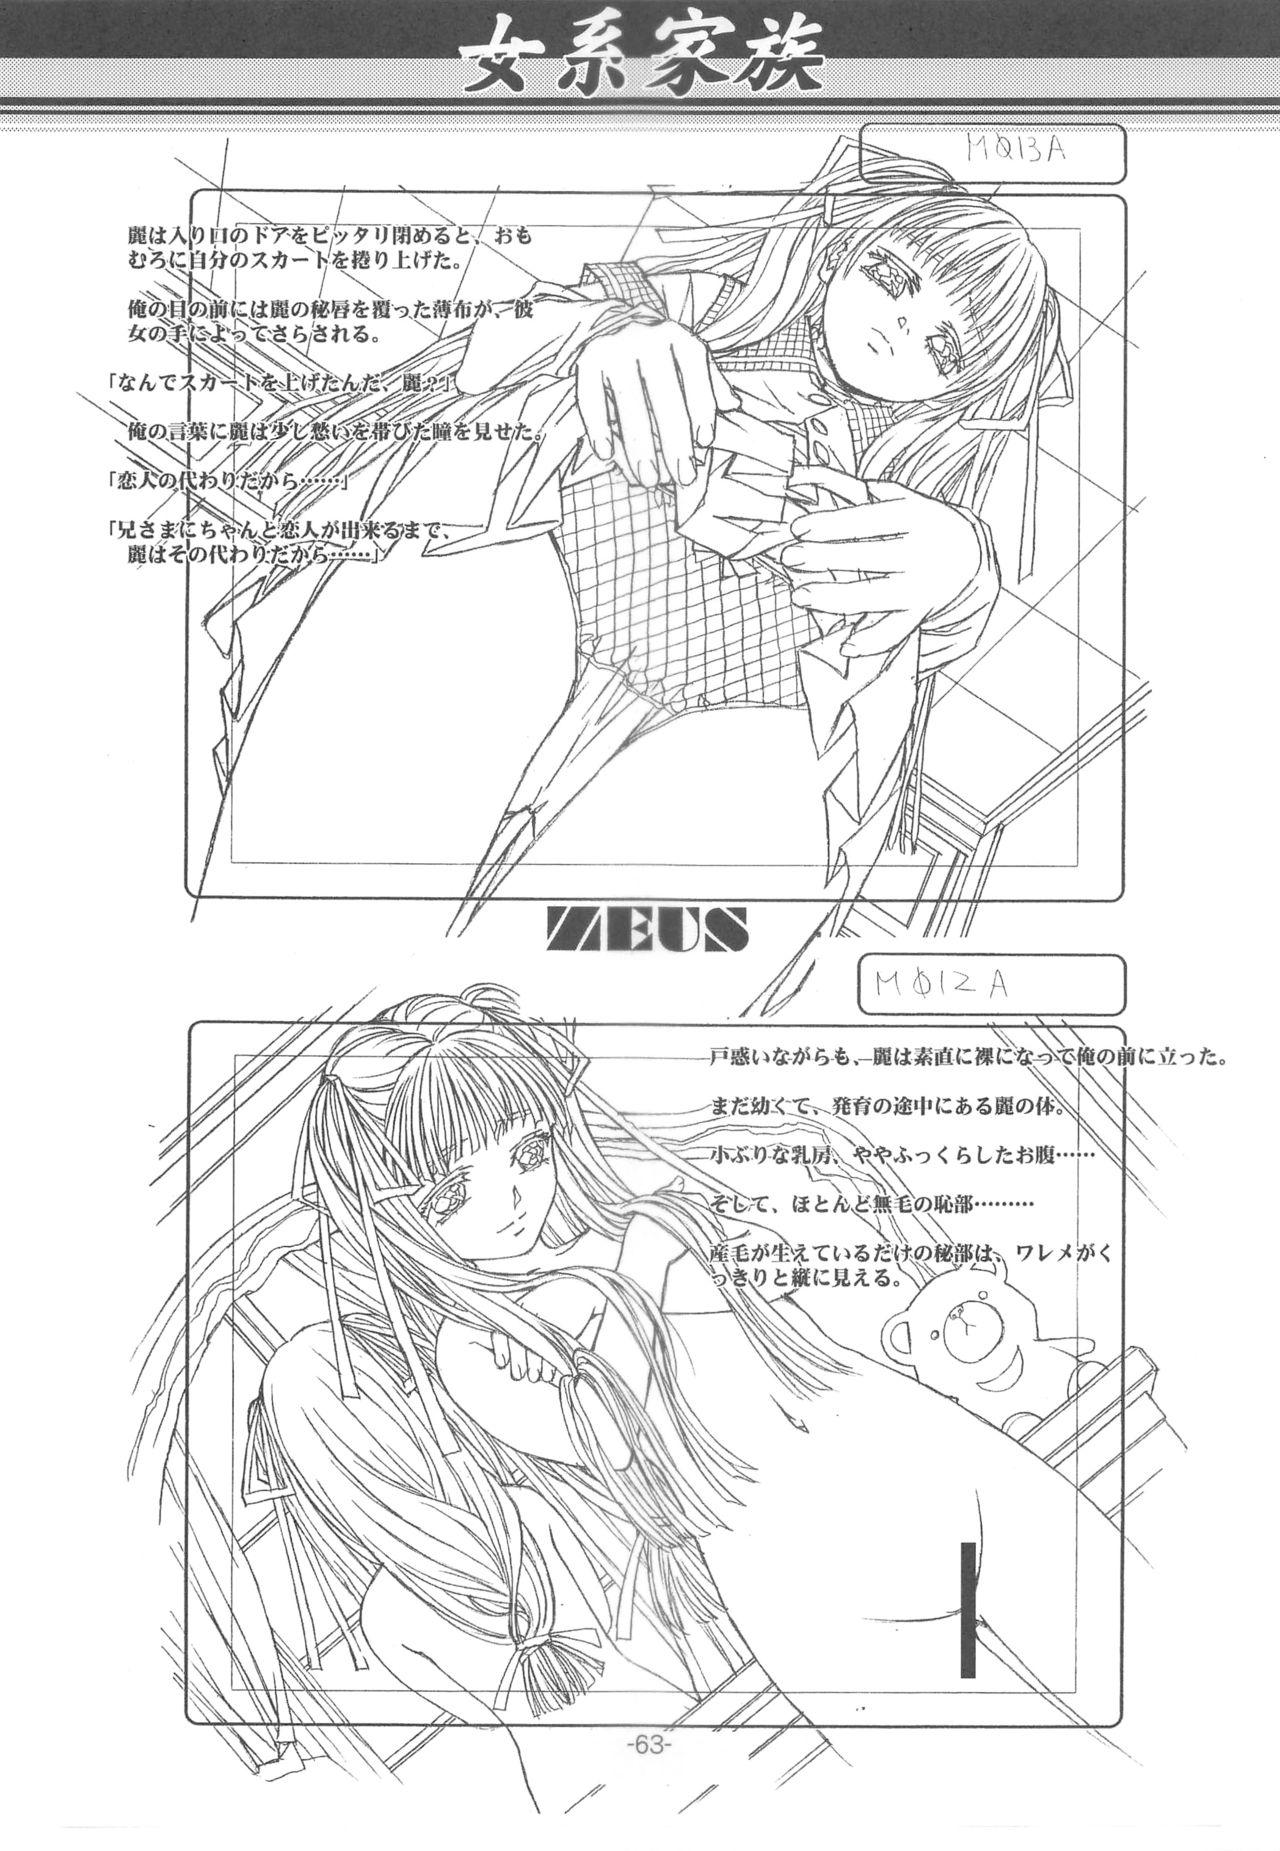 Otonano Do-wa Vol. 14 & Jokei Kazoku Senga shuu 61